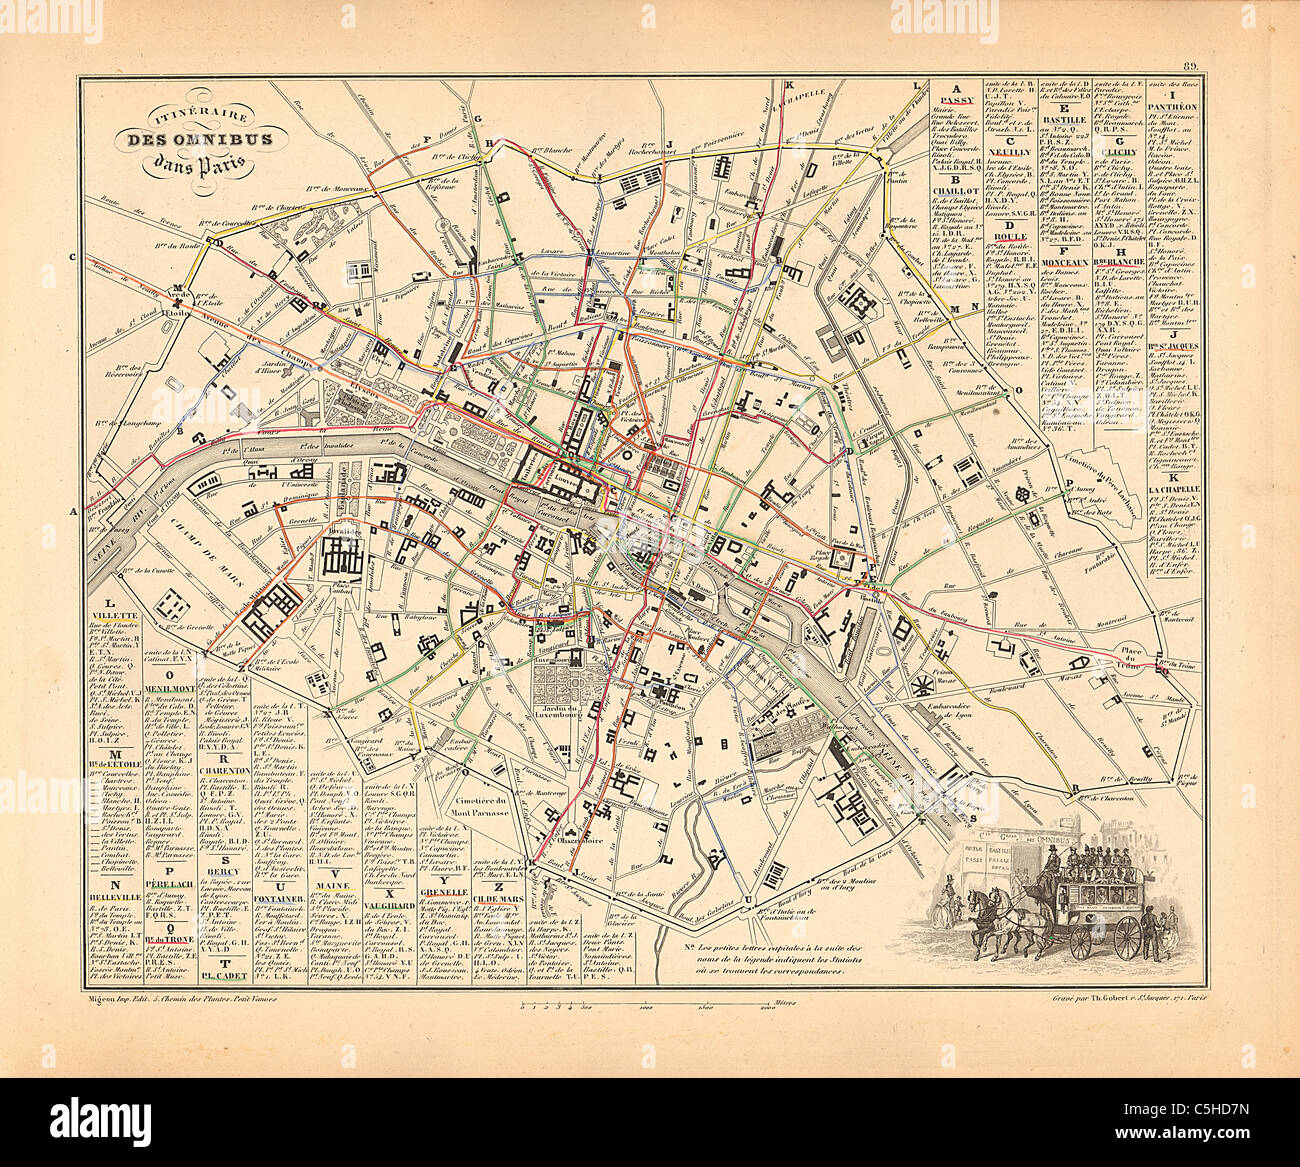 Itineraire des Omnibus dans Paris (Buslinien) Karte von 1858 französischen Atlas' Frankreich und seinen Kolonien" (La France et ses Kolonien) von Alexandre Vuillemin Stockfoto